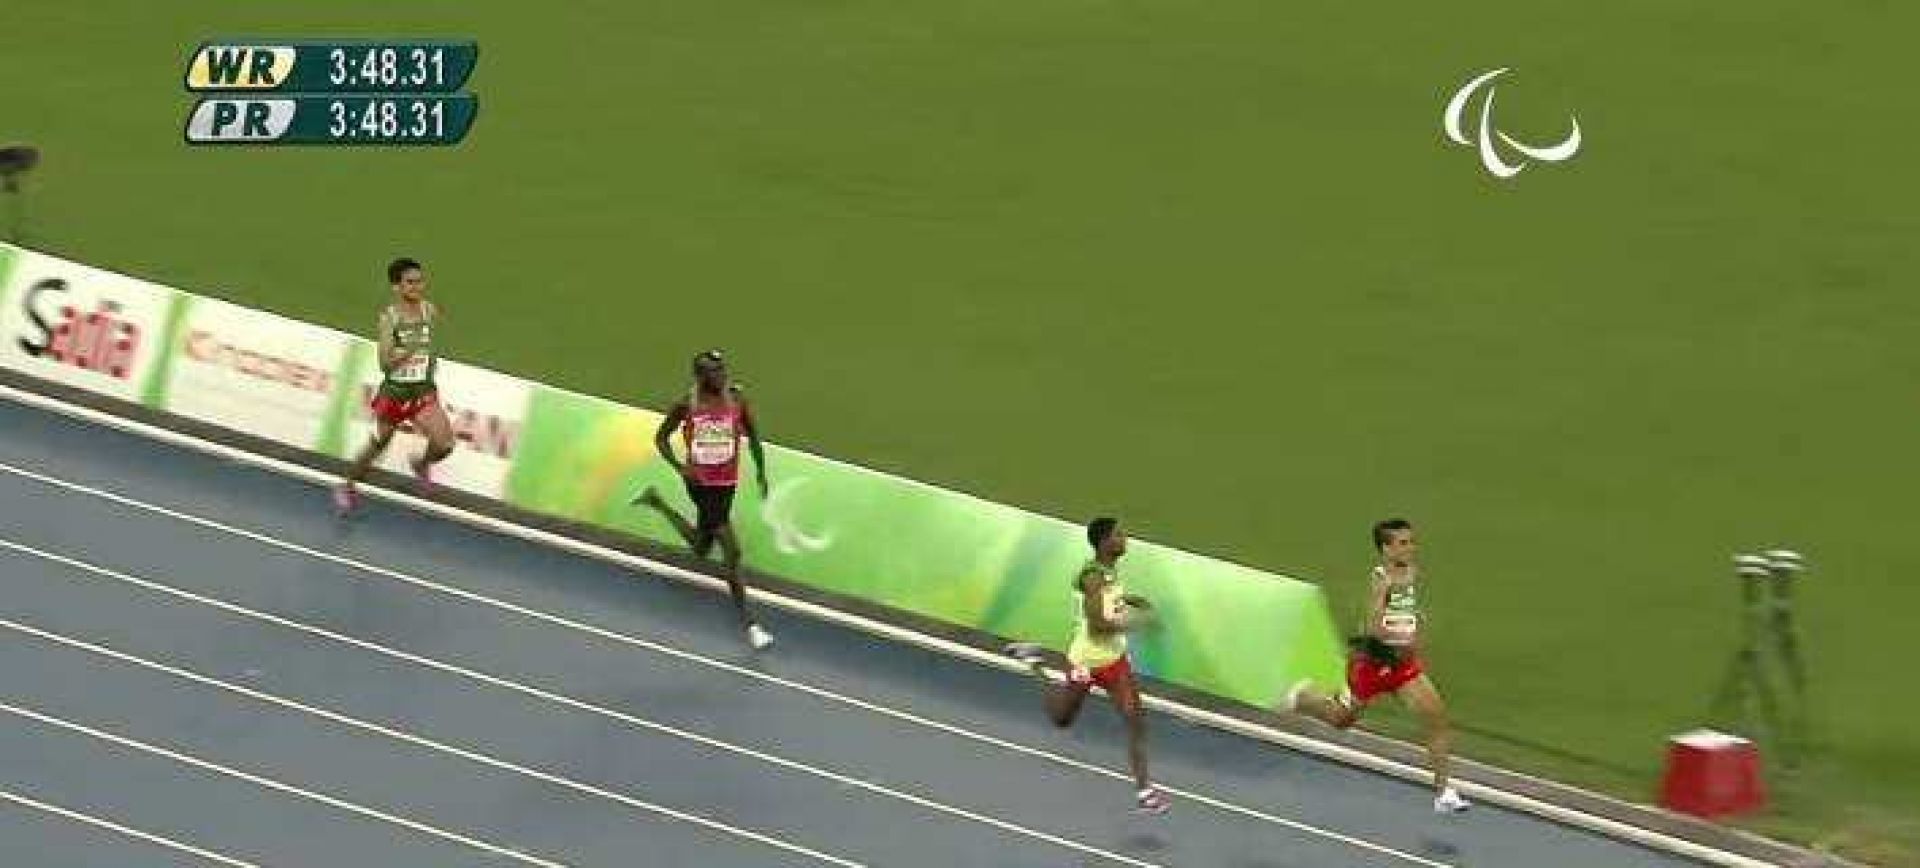 Απίστευτο: Παραολυμπιονίκες έτρεξαν γρηγορότερα από τον χρυσό Ολυμπιονίκη στα 1.500 μέτρα [vid]